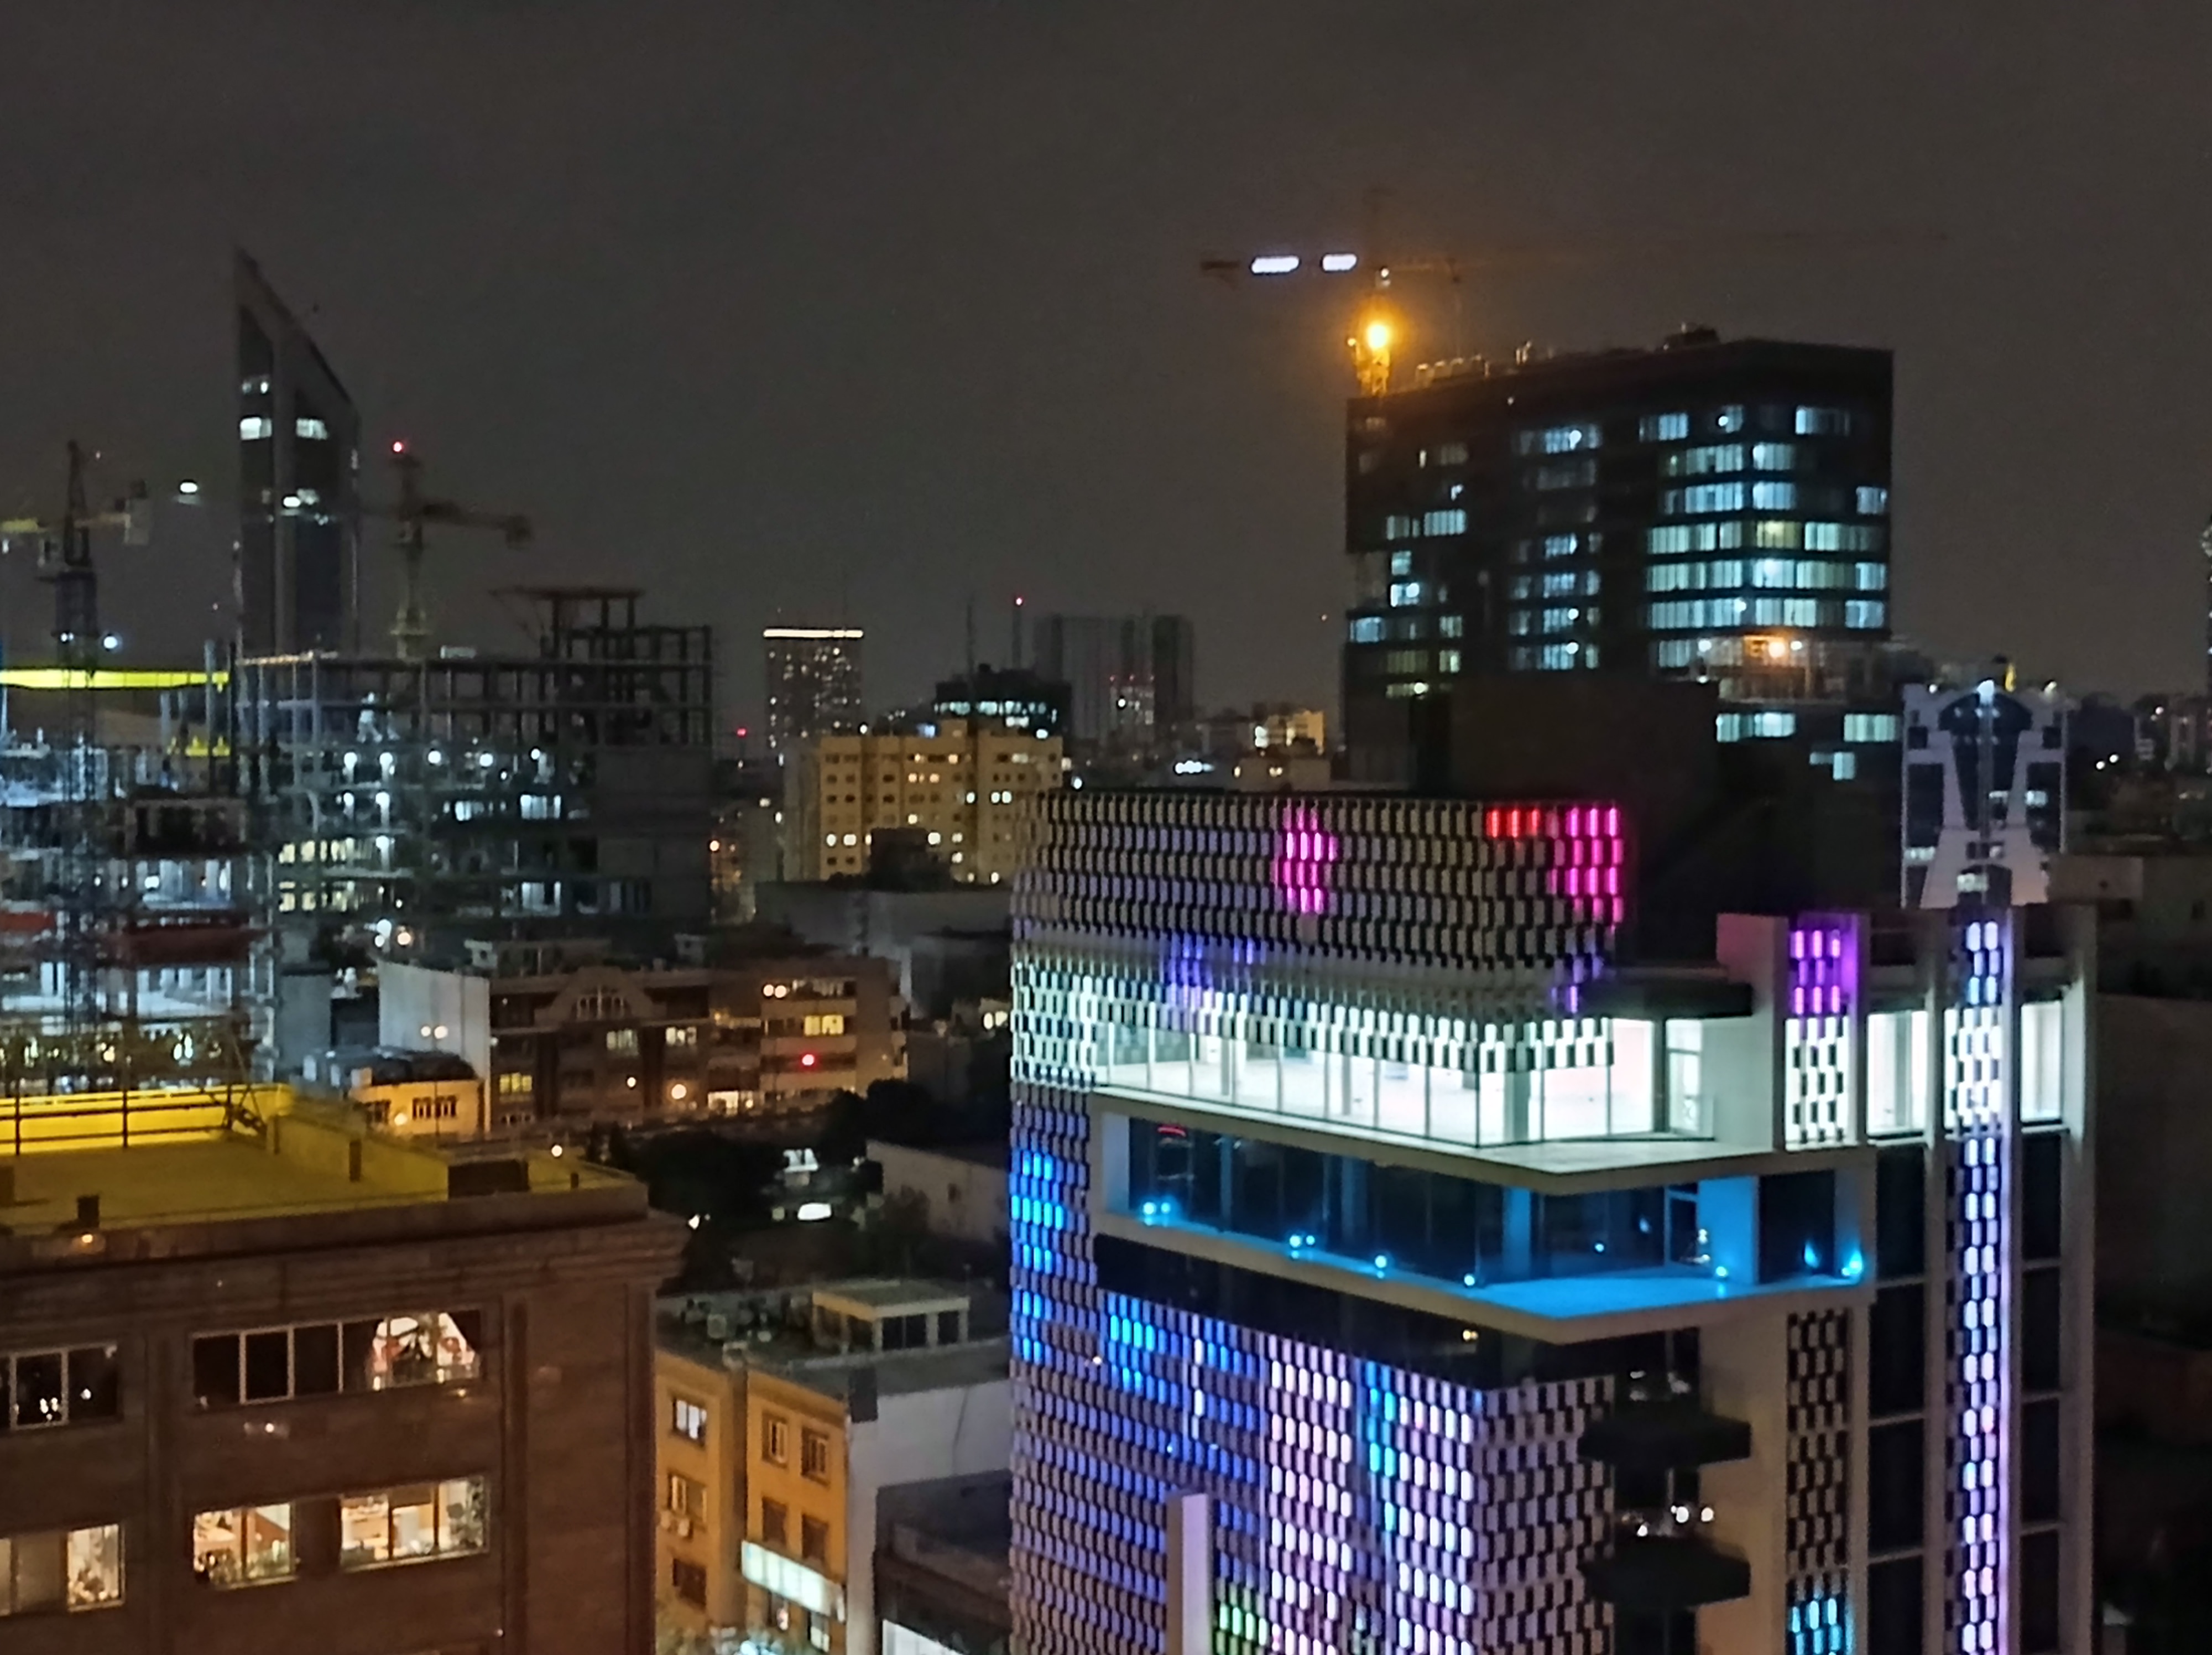 نمونه عکس 2x دوربین اصلی ردمی نوت ۹ در تاریکی - ساختمان های خیابان جردن